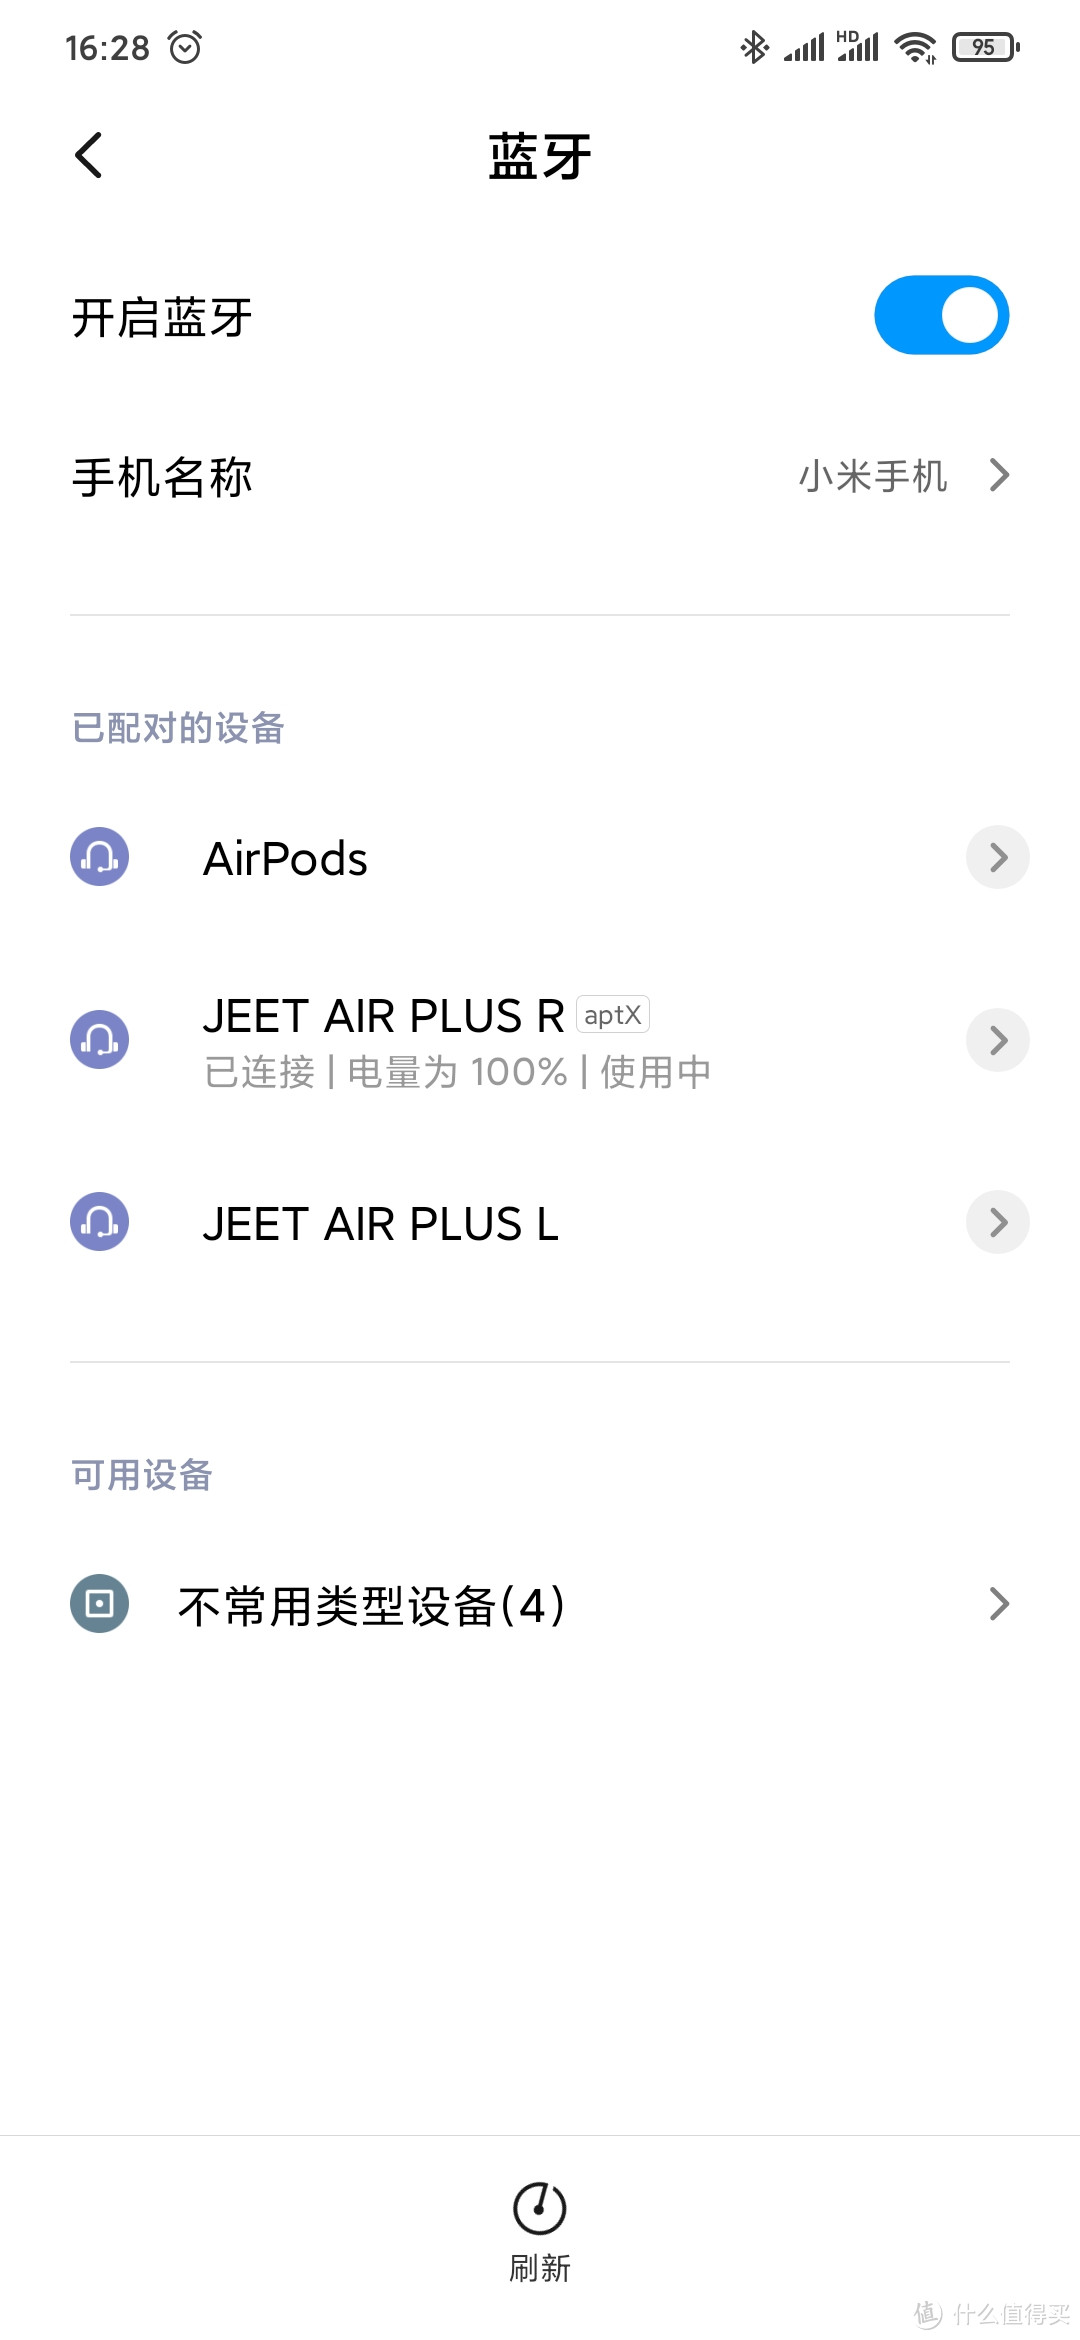 JEET Air Plus,能带给你听觉惊喜的好产品